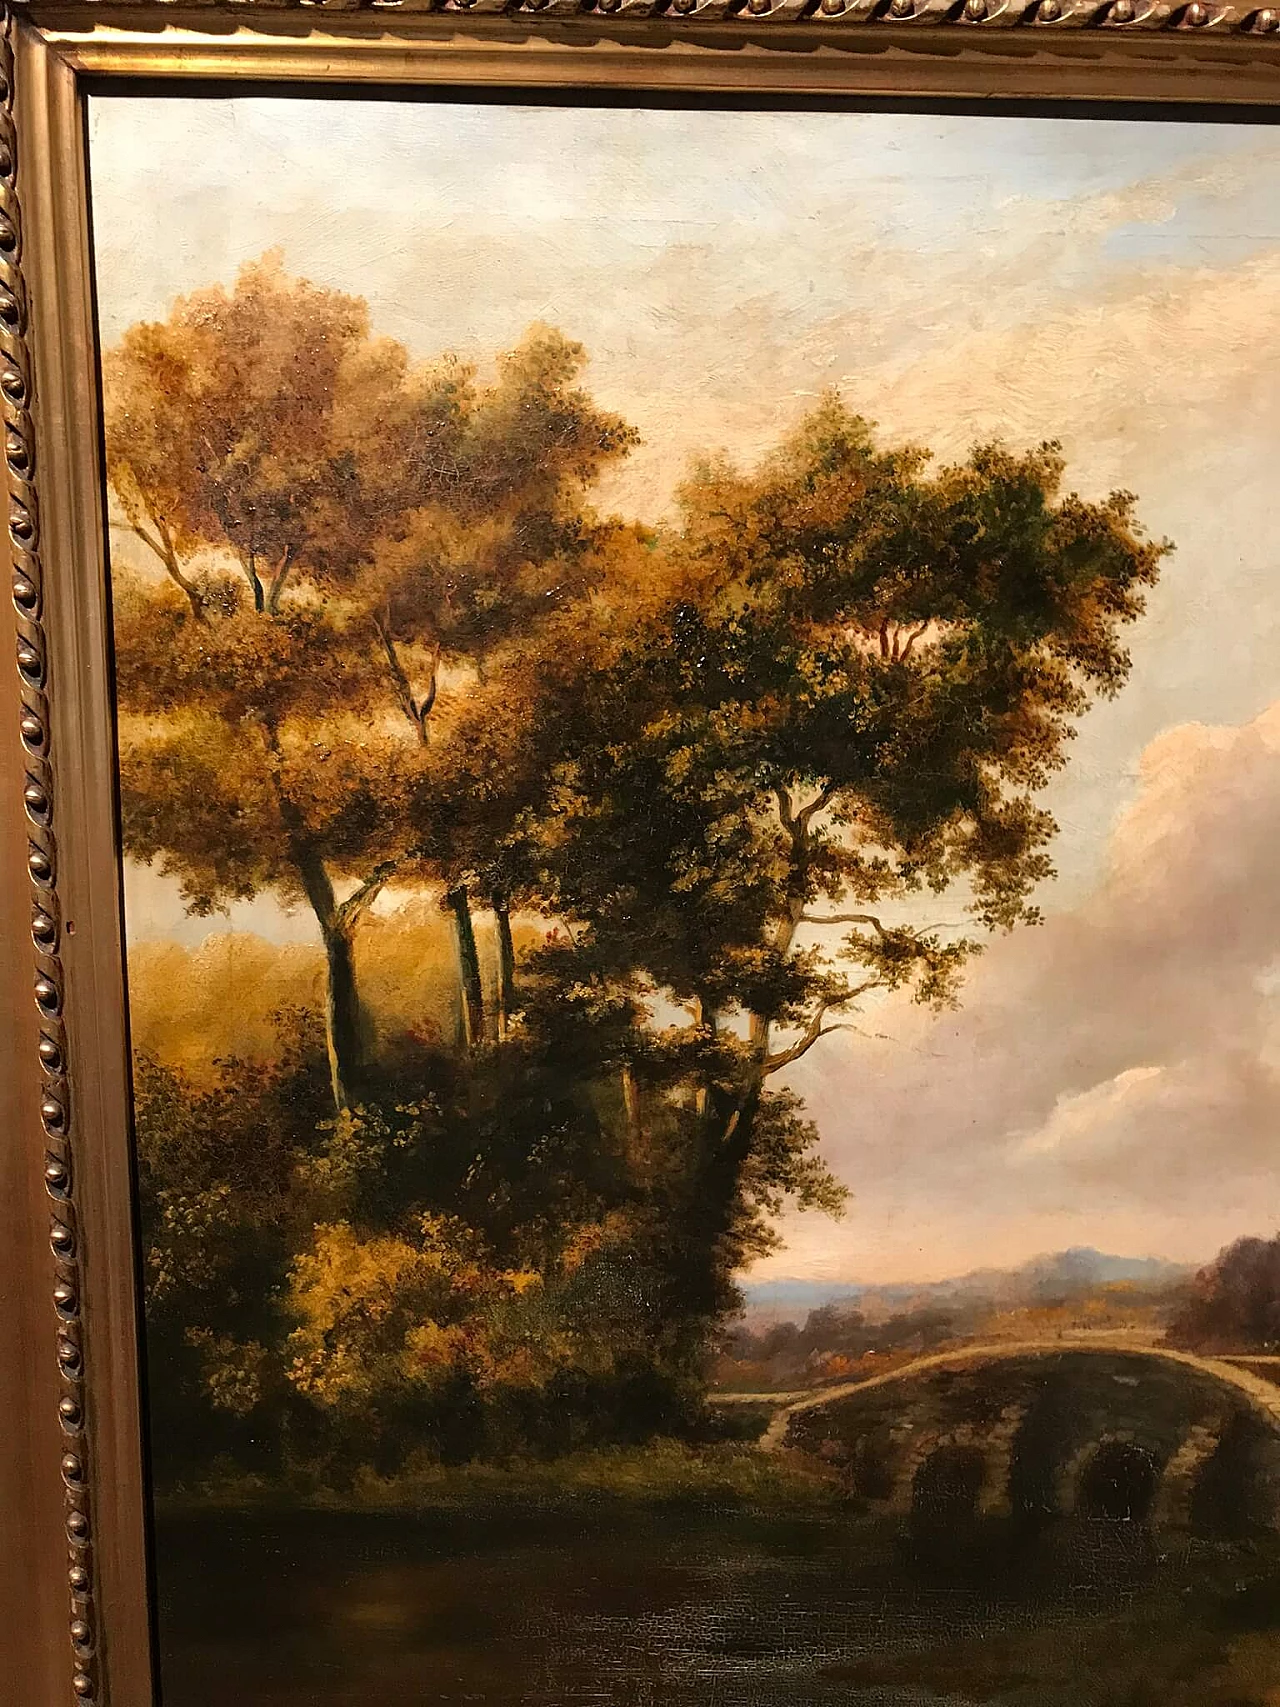 Dipinto olio su tela con paesaggio bucolico, '800 1175912